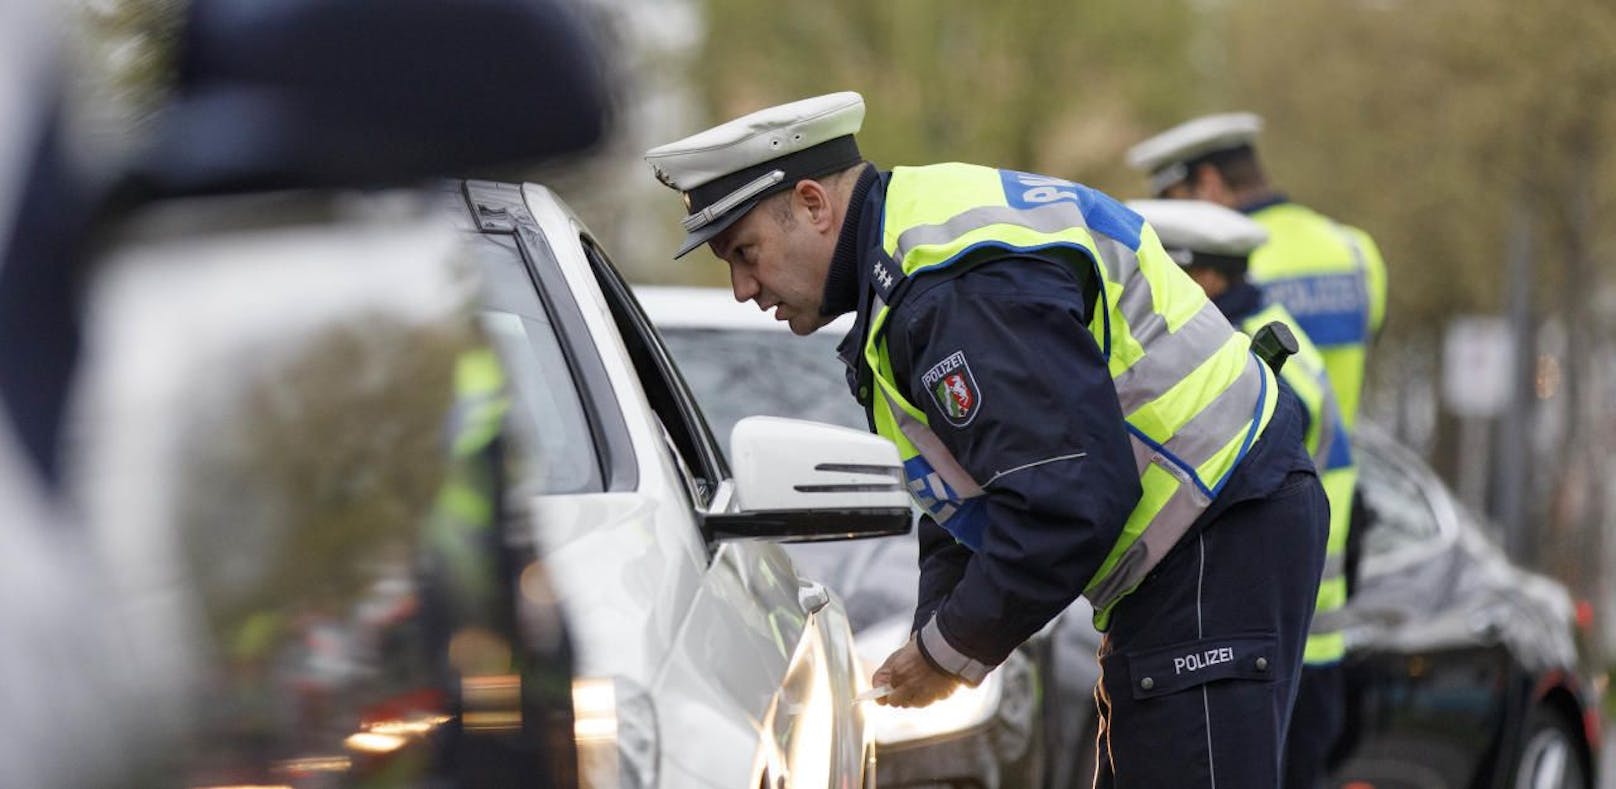 Polizei kontrolliert Autofahrer – nimmt ihn sofort fest